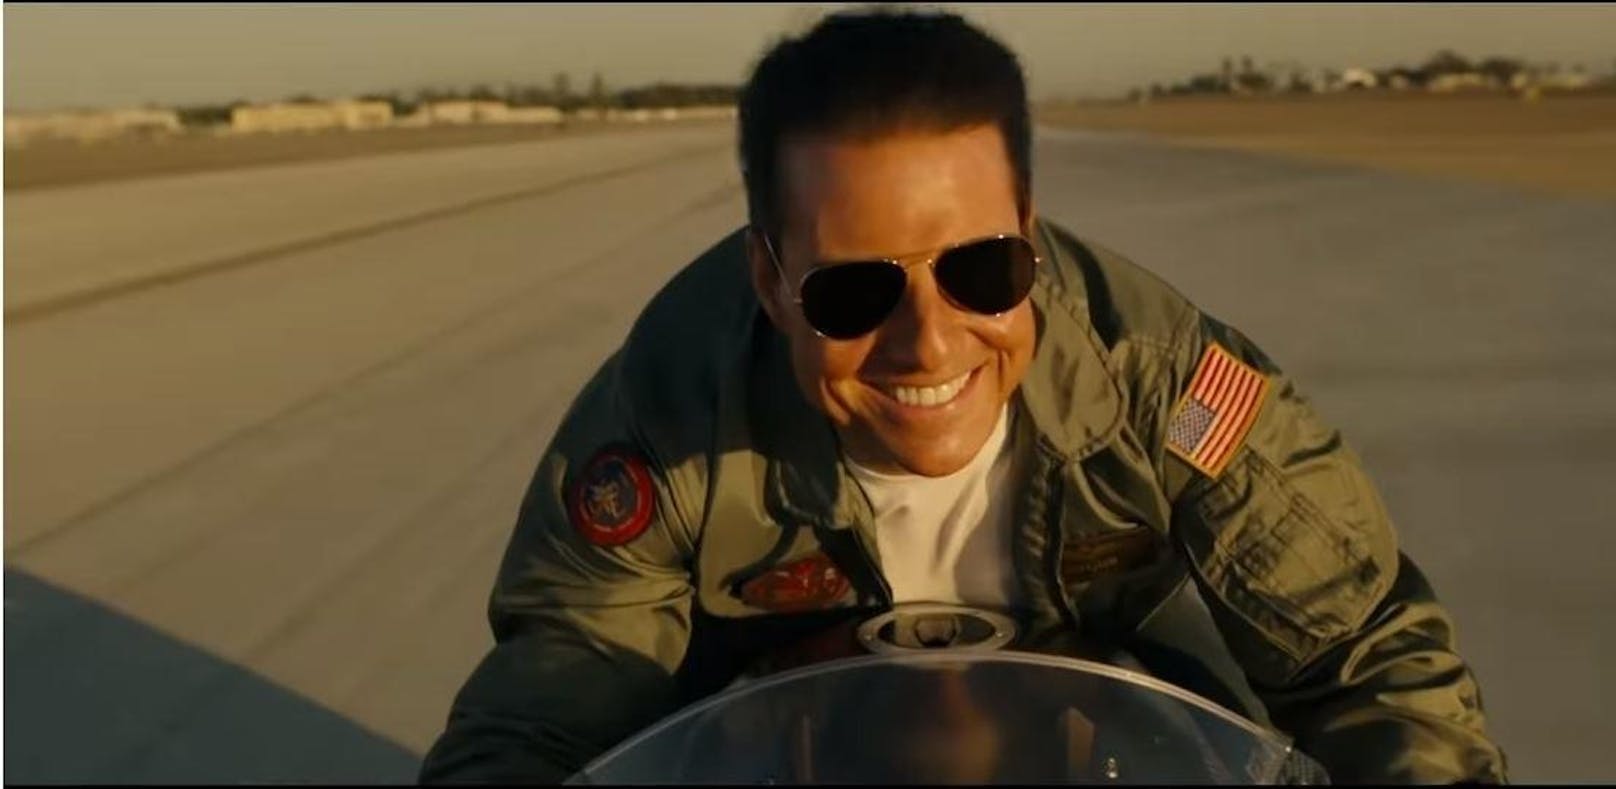 <b>TOP GUN: MAVERICK</b> <strong>(Juli 2021): </strong>25 Jahre nach seinem ersten Kampfpiloten-Abenteuer wollte <strong>Tom Cruise</strong> in diesem Jahr als "Maverick" auf die Leinwand zurückkehren. Wegen Corona dürfte das Comeback aber erst im kommenden Sommer stattfinden. <strong>&gt;&gt; <a href="https://www.youtube.com/watch?v=0wkFPx8hbjw">HIER</a> geht's zum Trailer &lt;&lt;</strong><br>